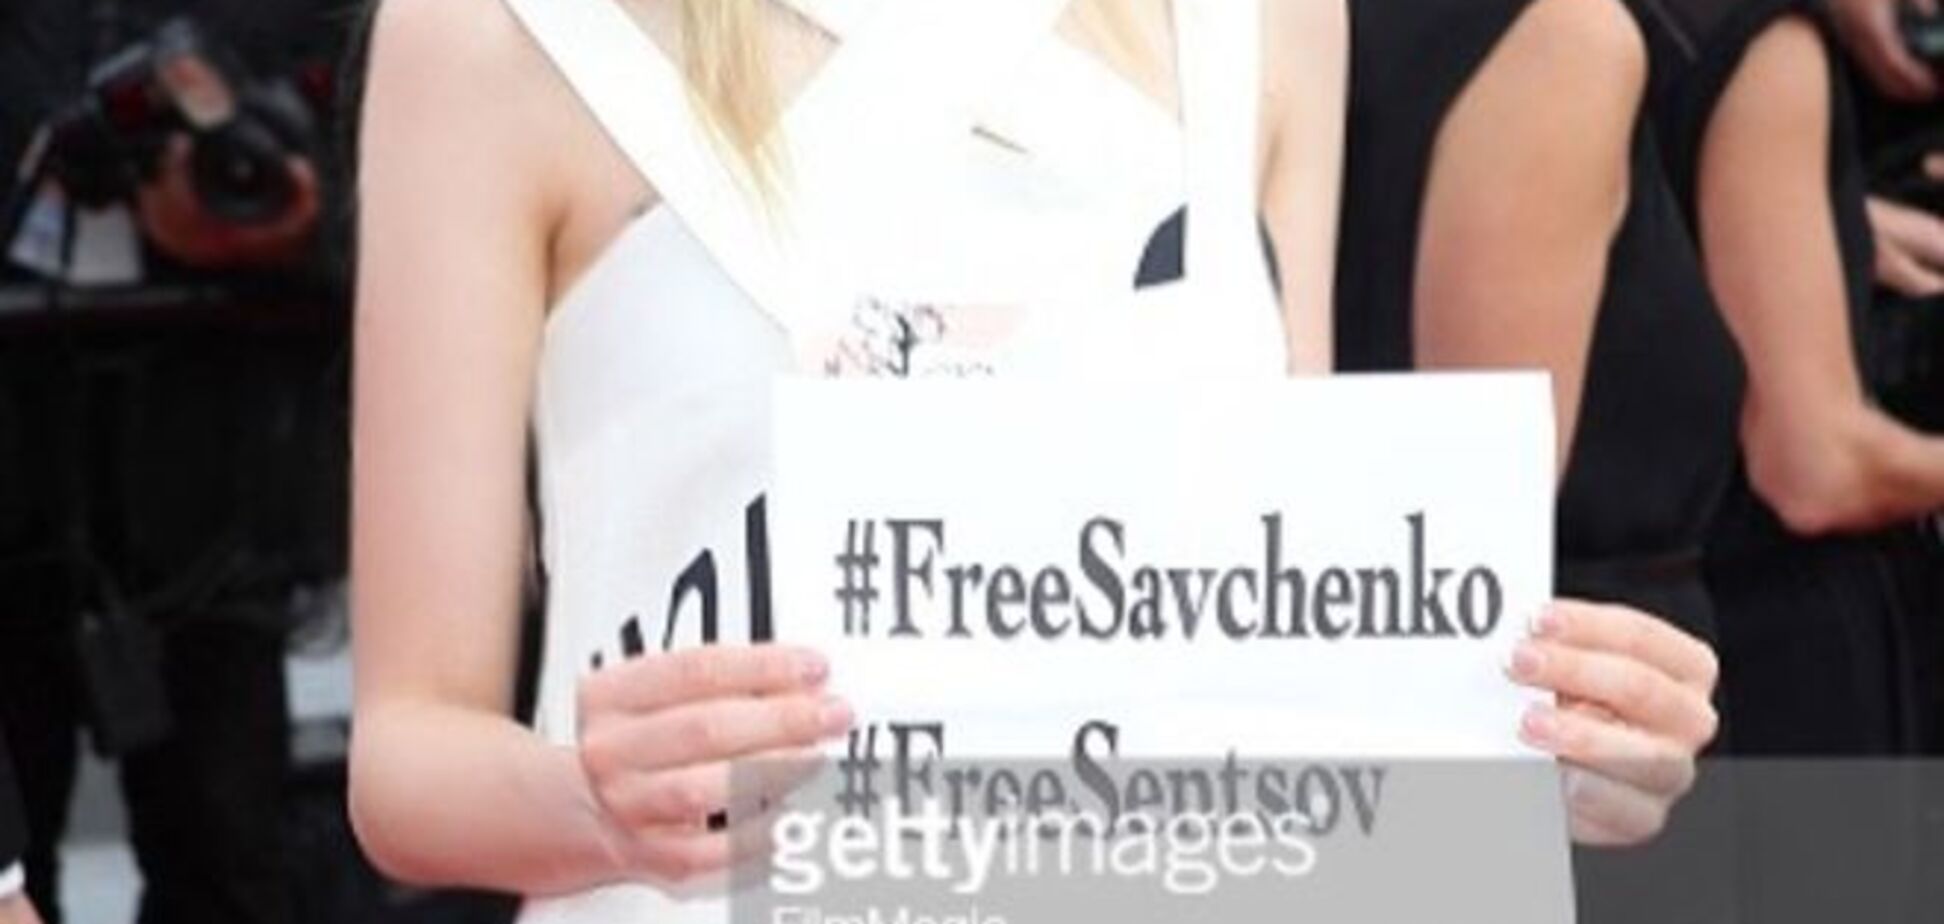 Украинская актриса вышла на красную дорожку в Каннах с плакатом в поддержку Савченко и Сенцова